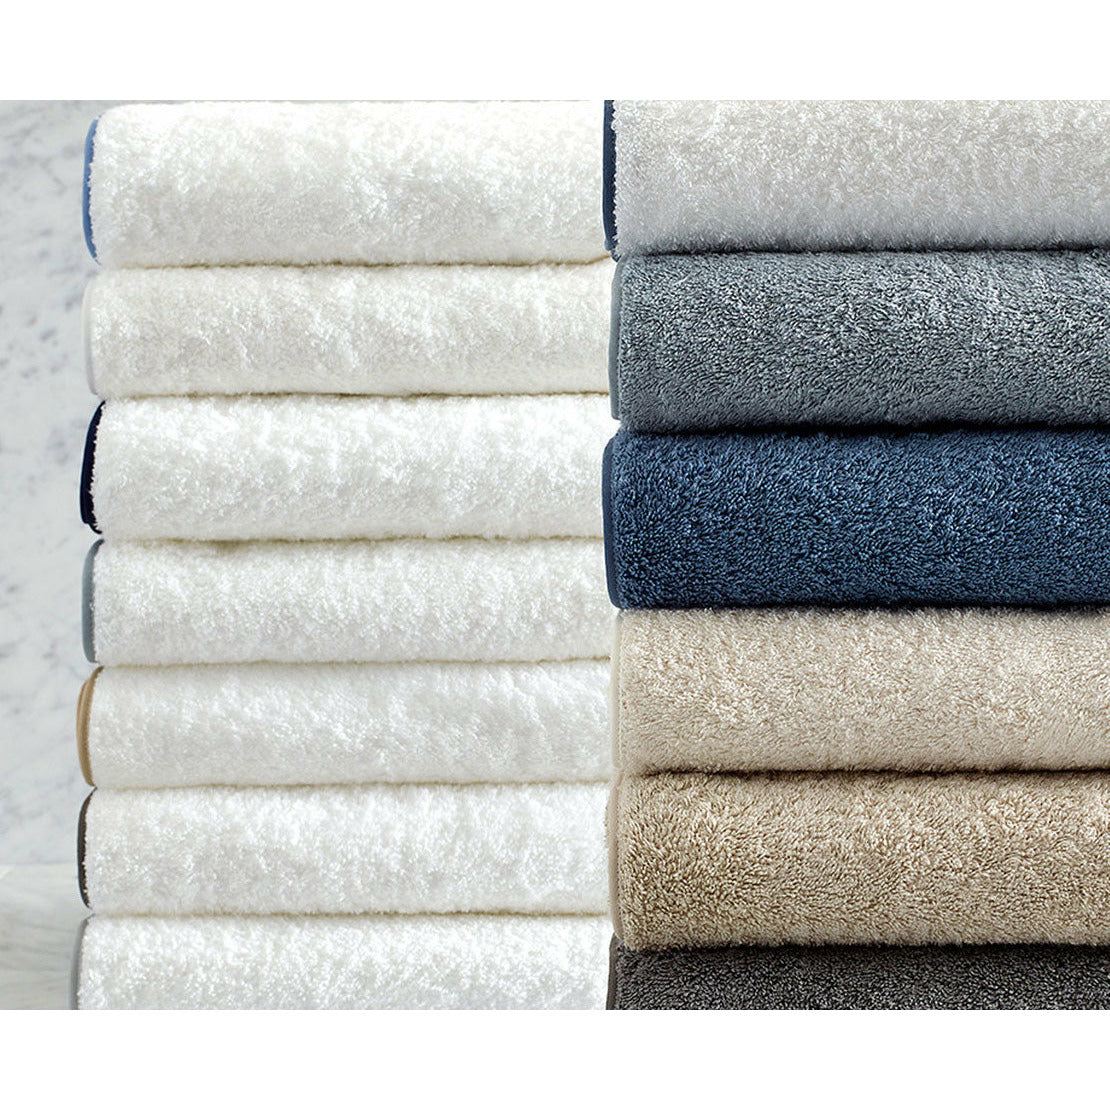 Matouk Cairo Bath Towels Stack Colors Fine Linens